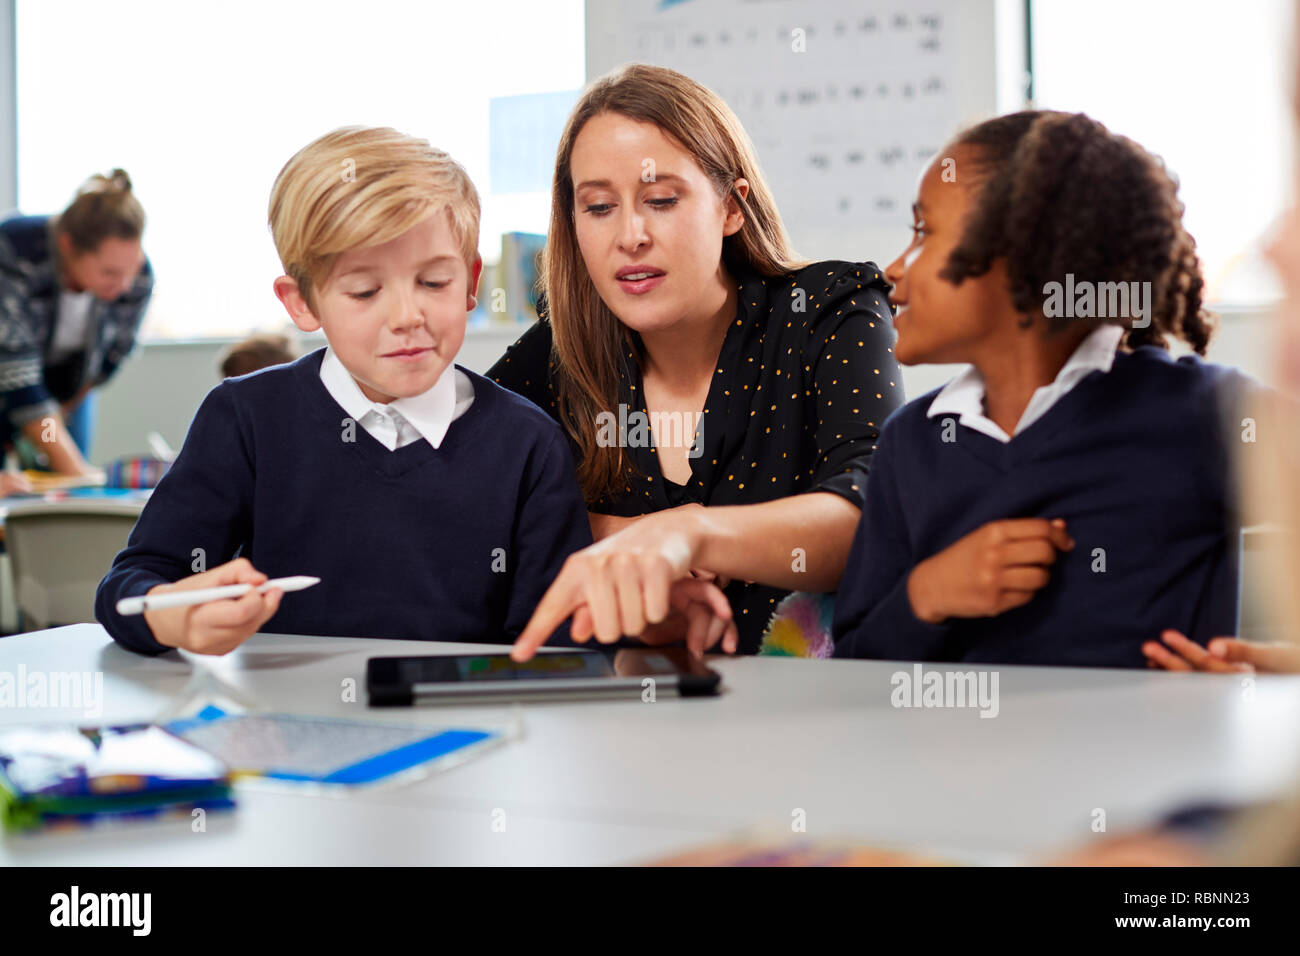 Weibliche Lehrer helfen zwei Kinder mit einem Tablet-PC am Schreibtisch in einer Grundschule Klassenzimmer, Vorderansicht Stockfoto